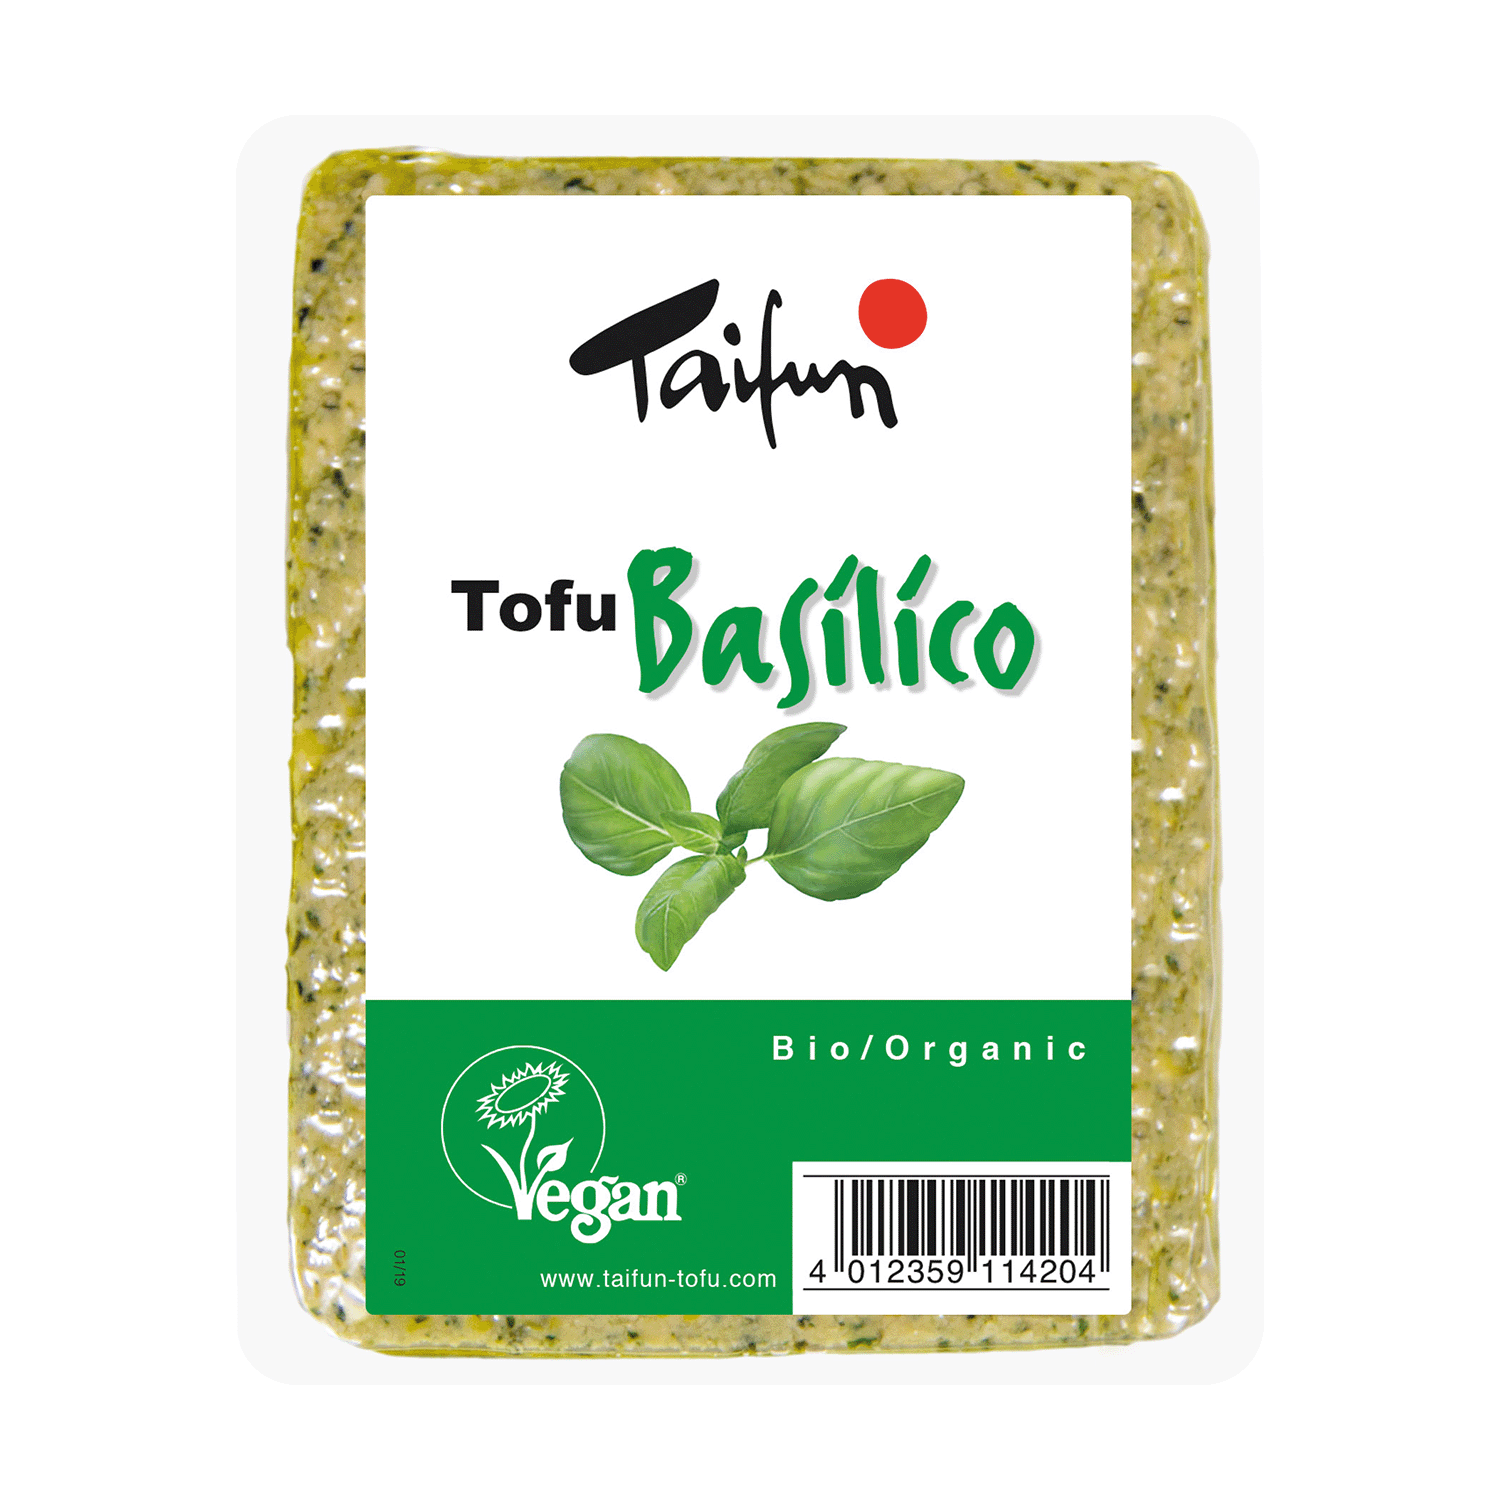 Tofu Basilico, BIO, 200g